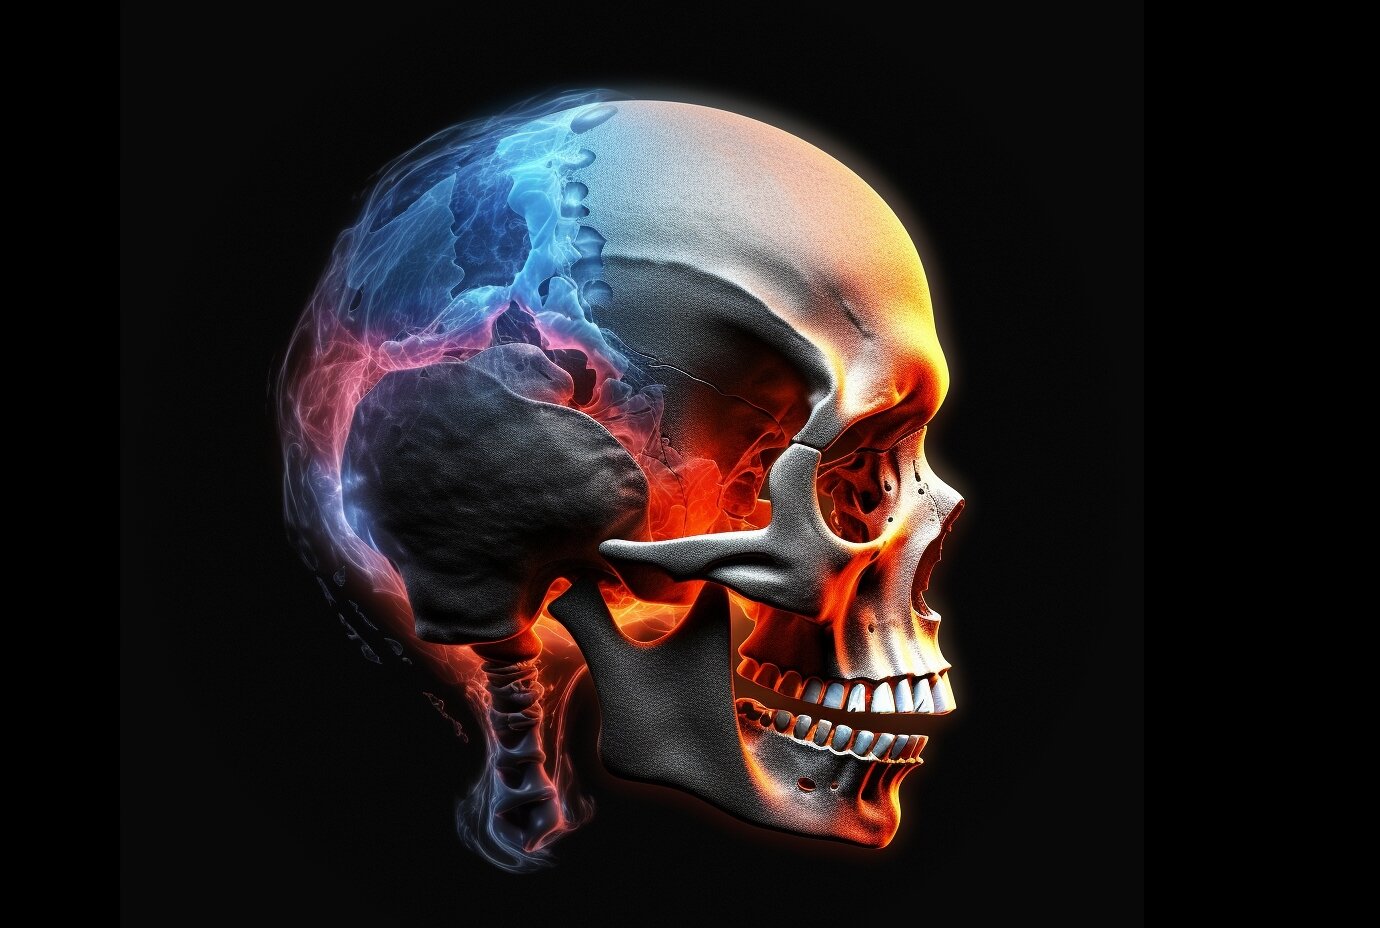 Neuroscience For Kids - The Skull